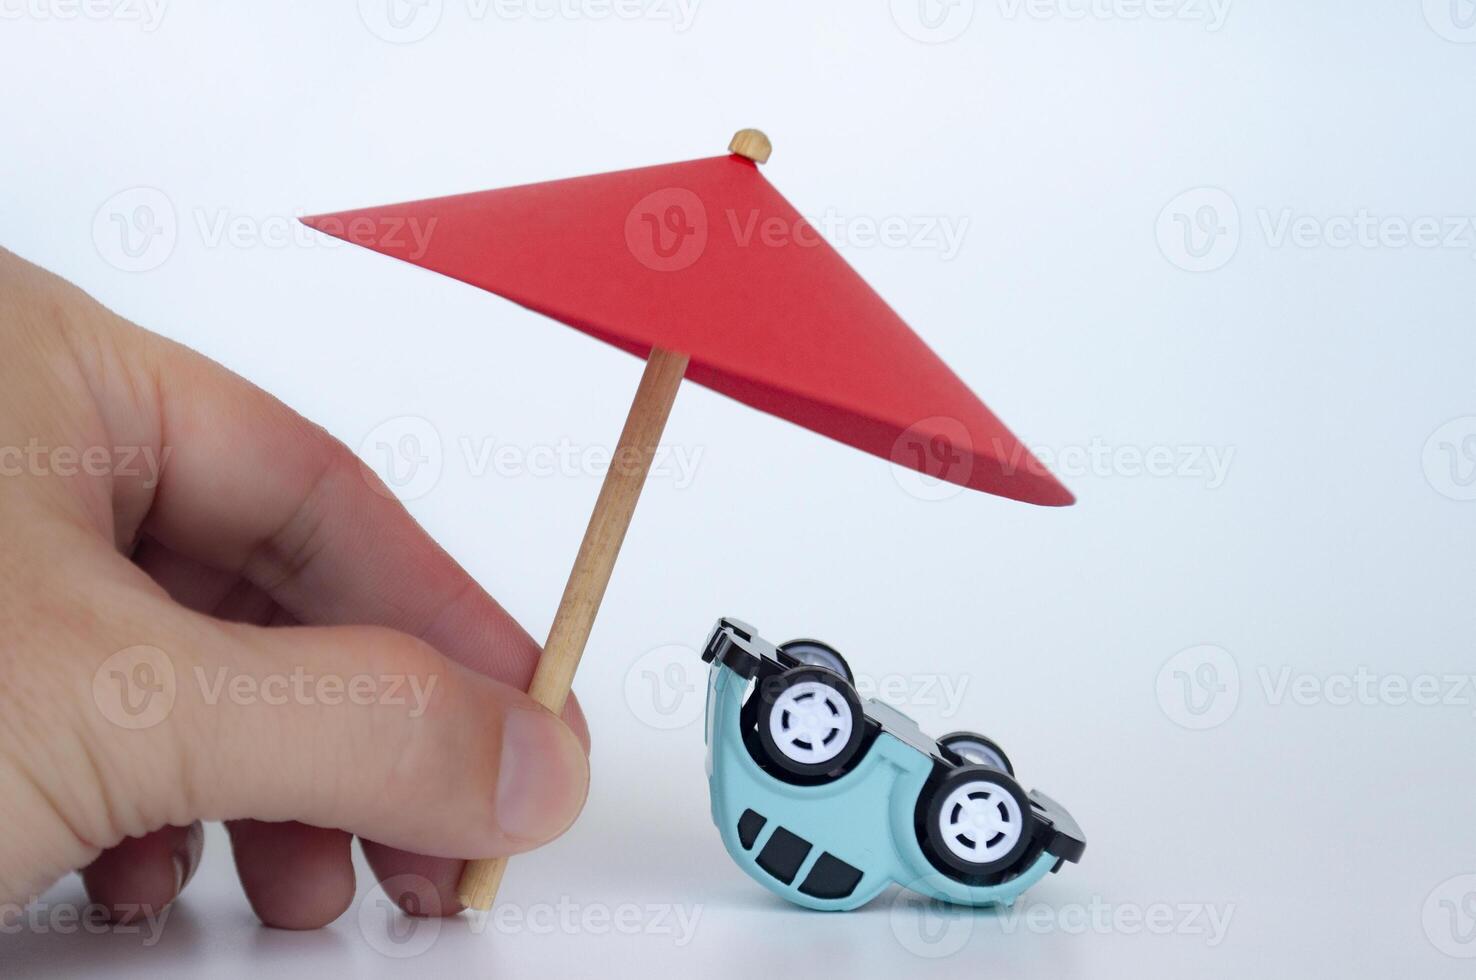 rojo juguete paraguas y al revés abajo azul juguete coche en blanco antecedentes foto